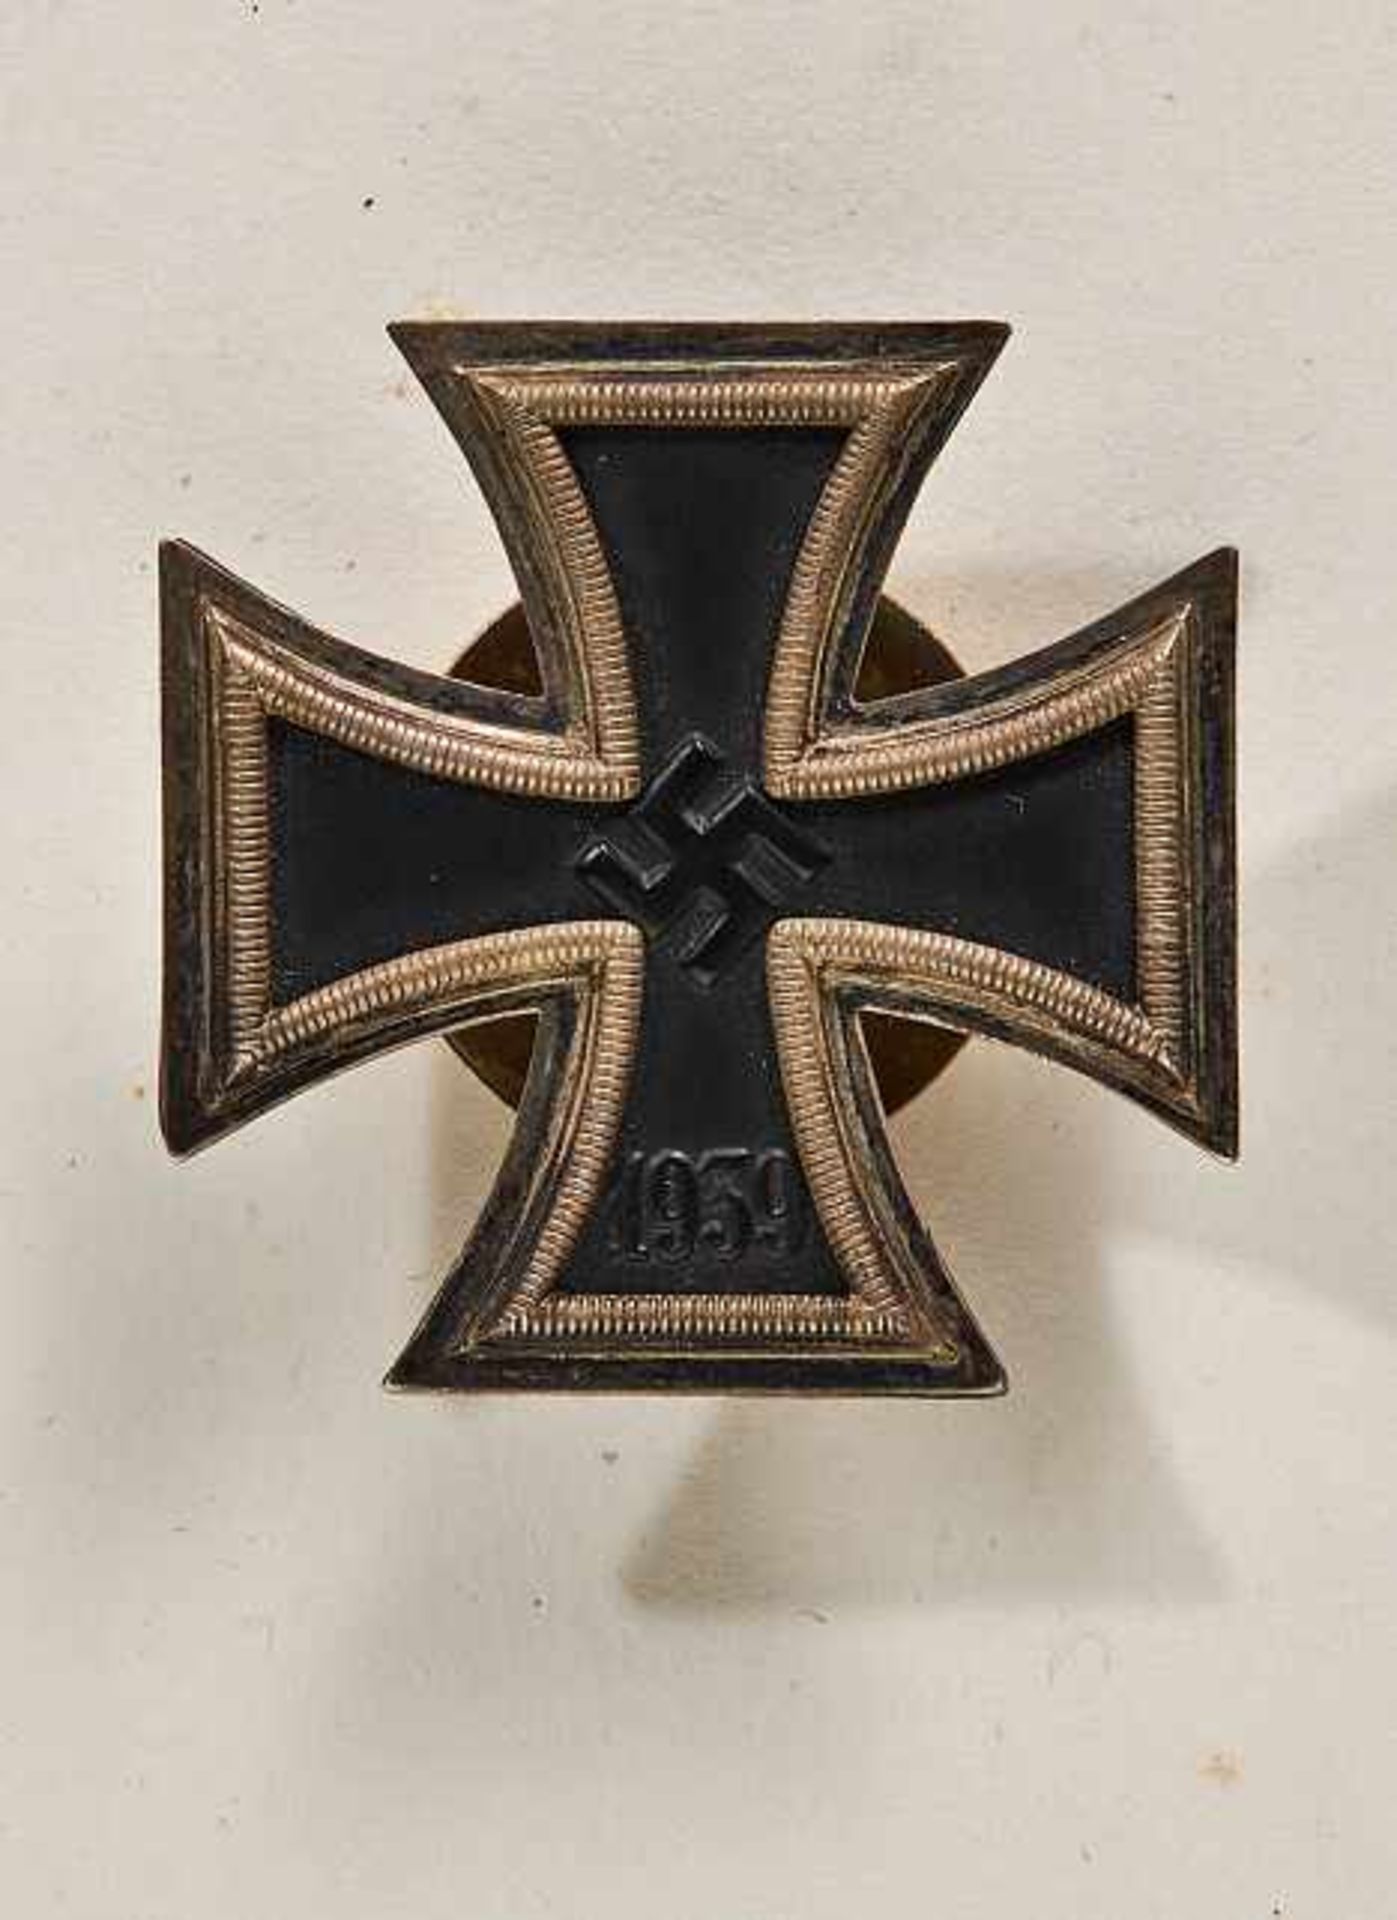 Deutsches Reich 1933 - 1945 - General Awards - Eisernen Kreuzes 1939 : Iron Cross 1st Class.Cross